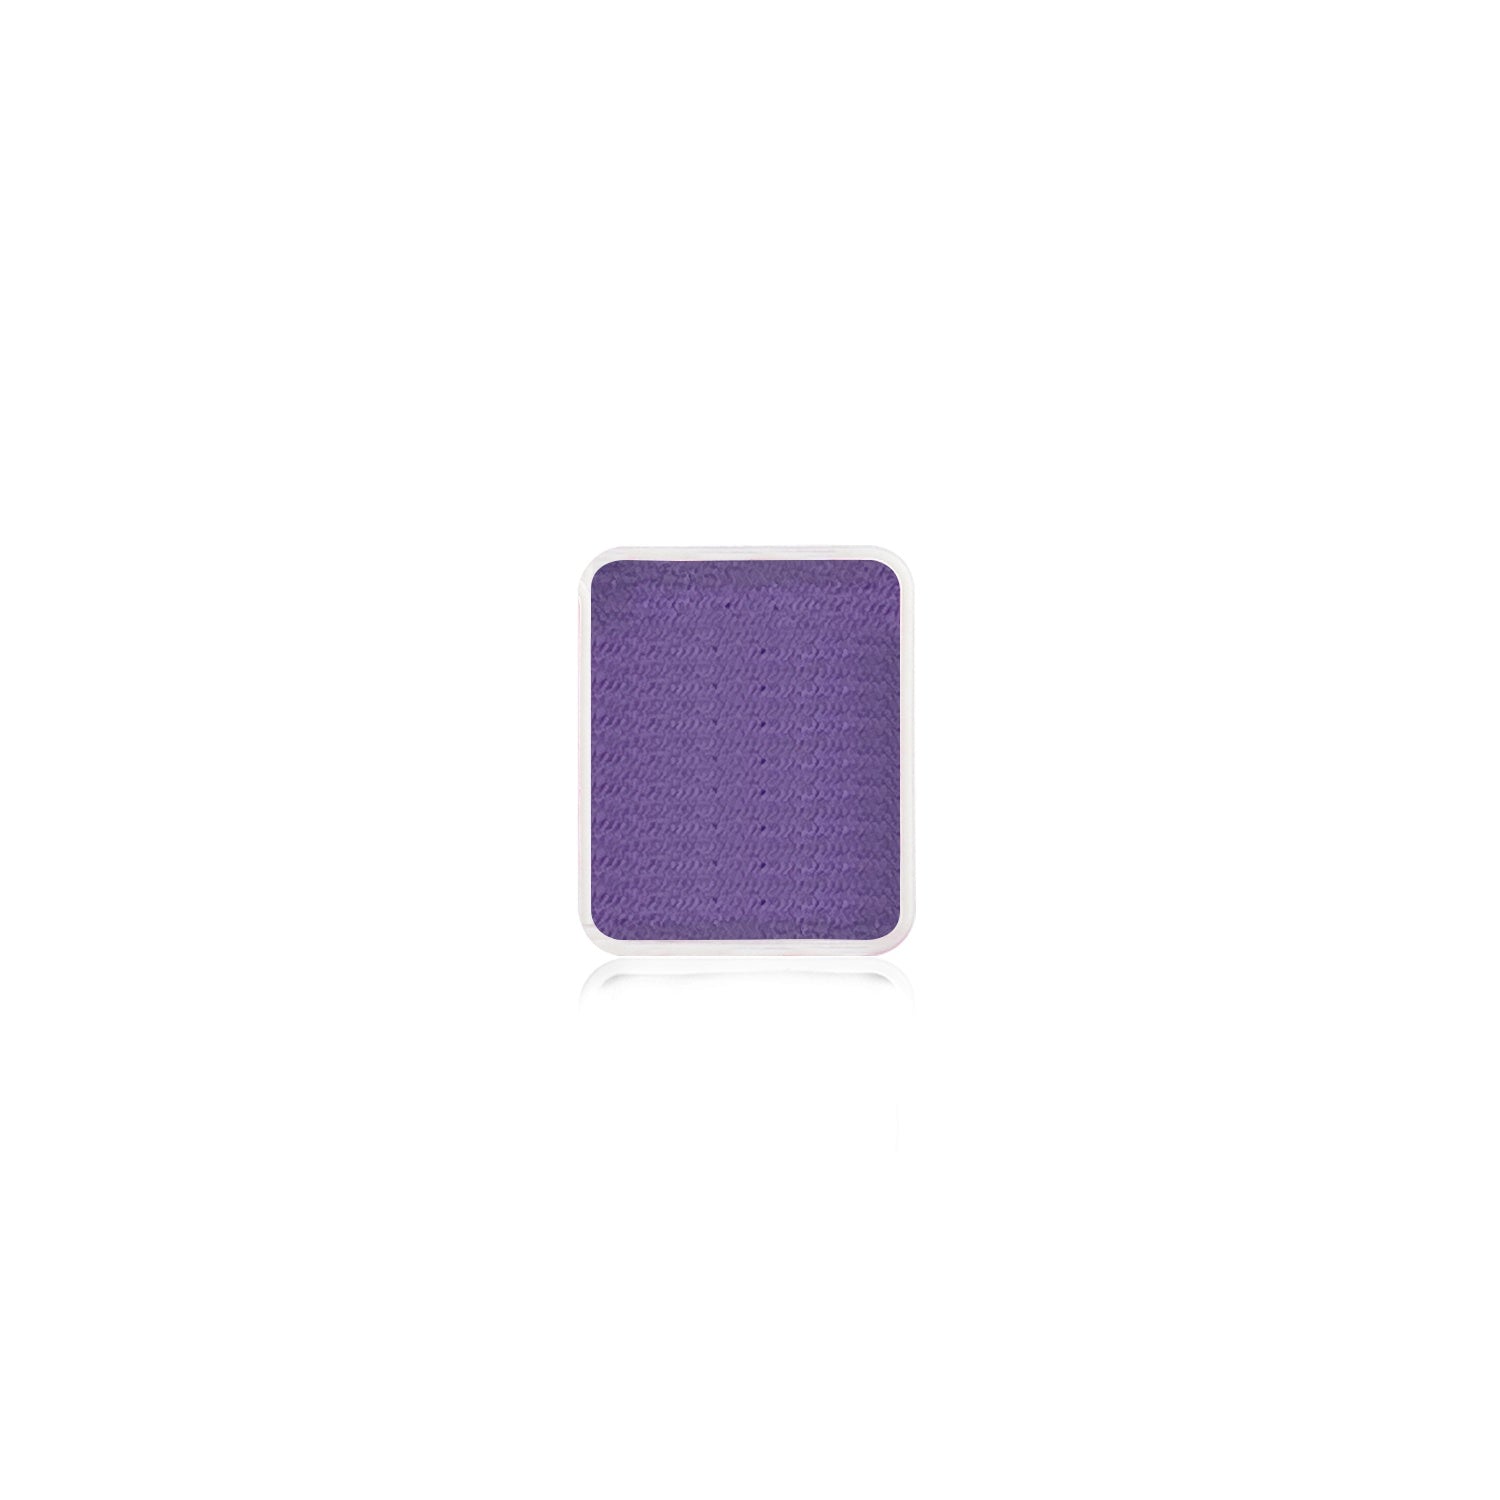 Kraze FX Face Paint Refill - Violet (6 gm)